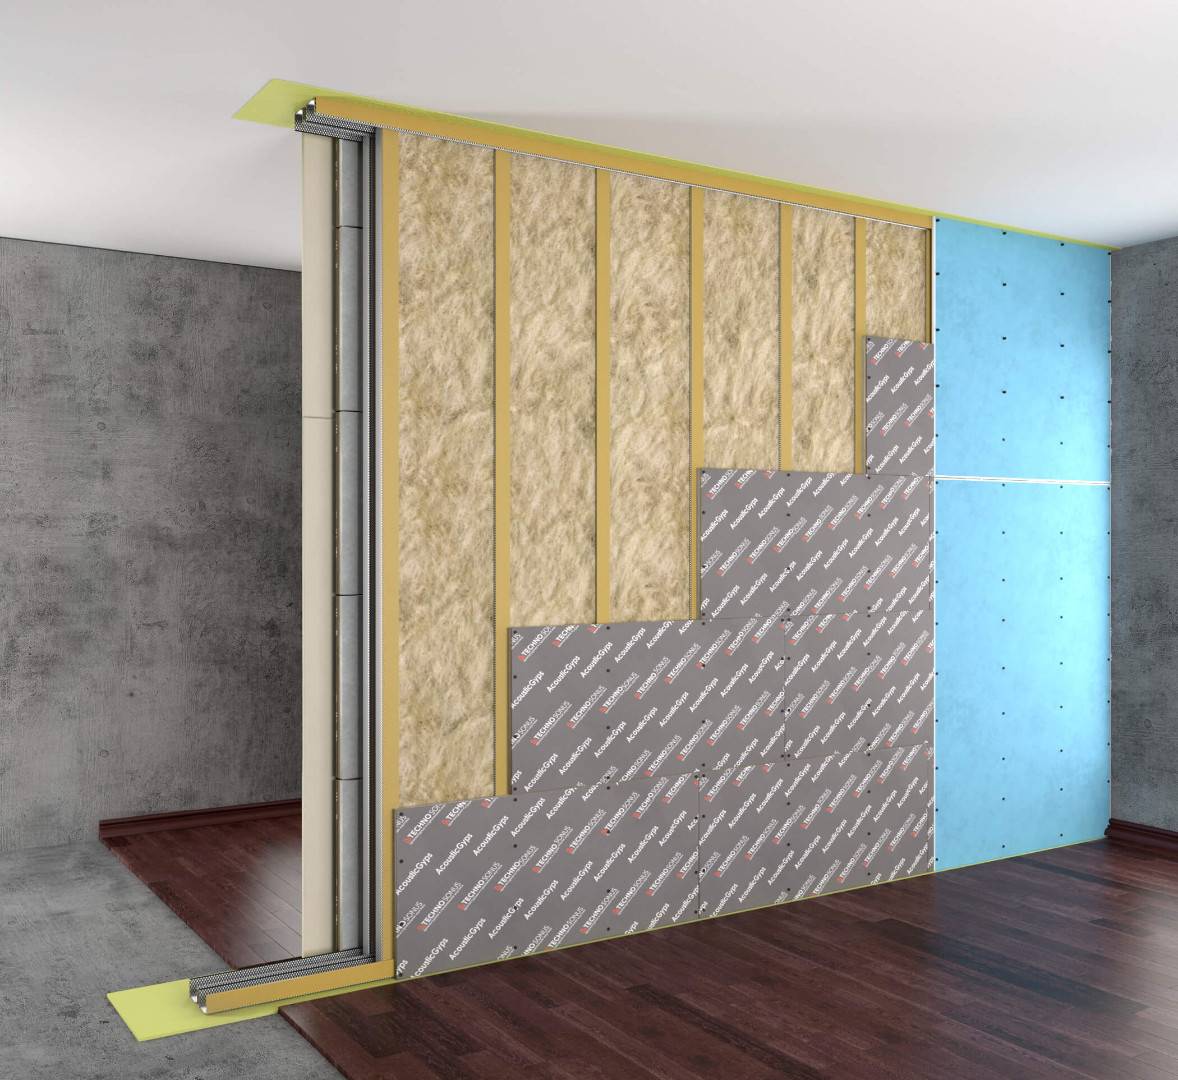 Качественная шумоизоляция стен в квартире: современные материалы и правила их использования